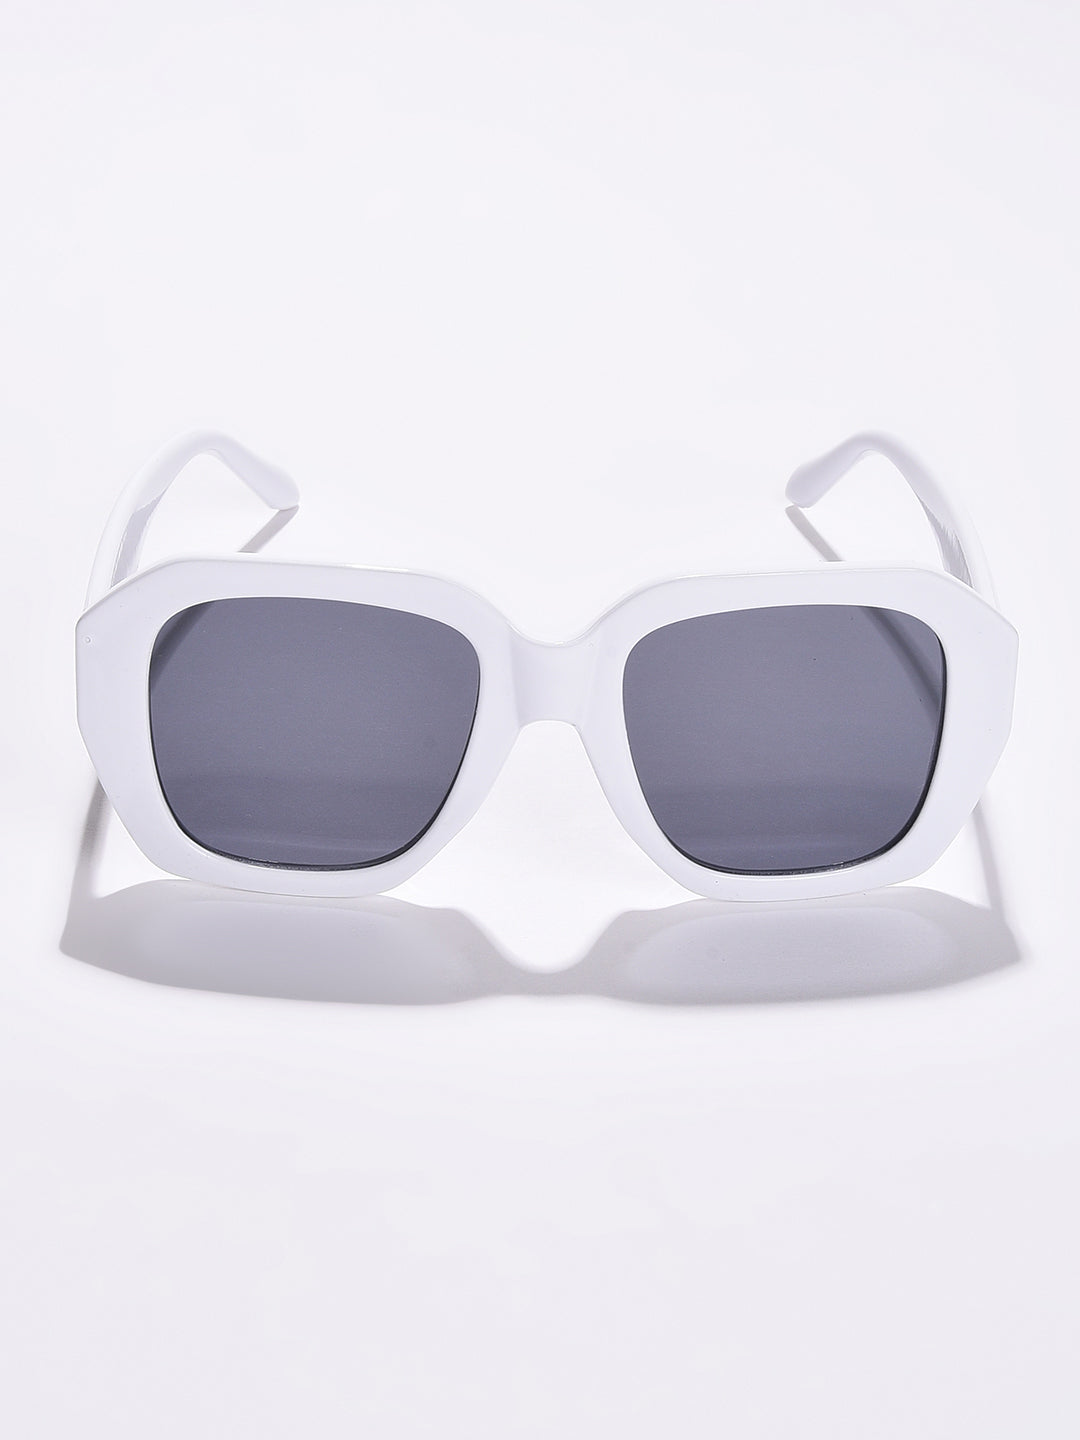 Black Lens White Wayfarer Sunglasses